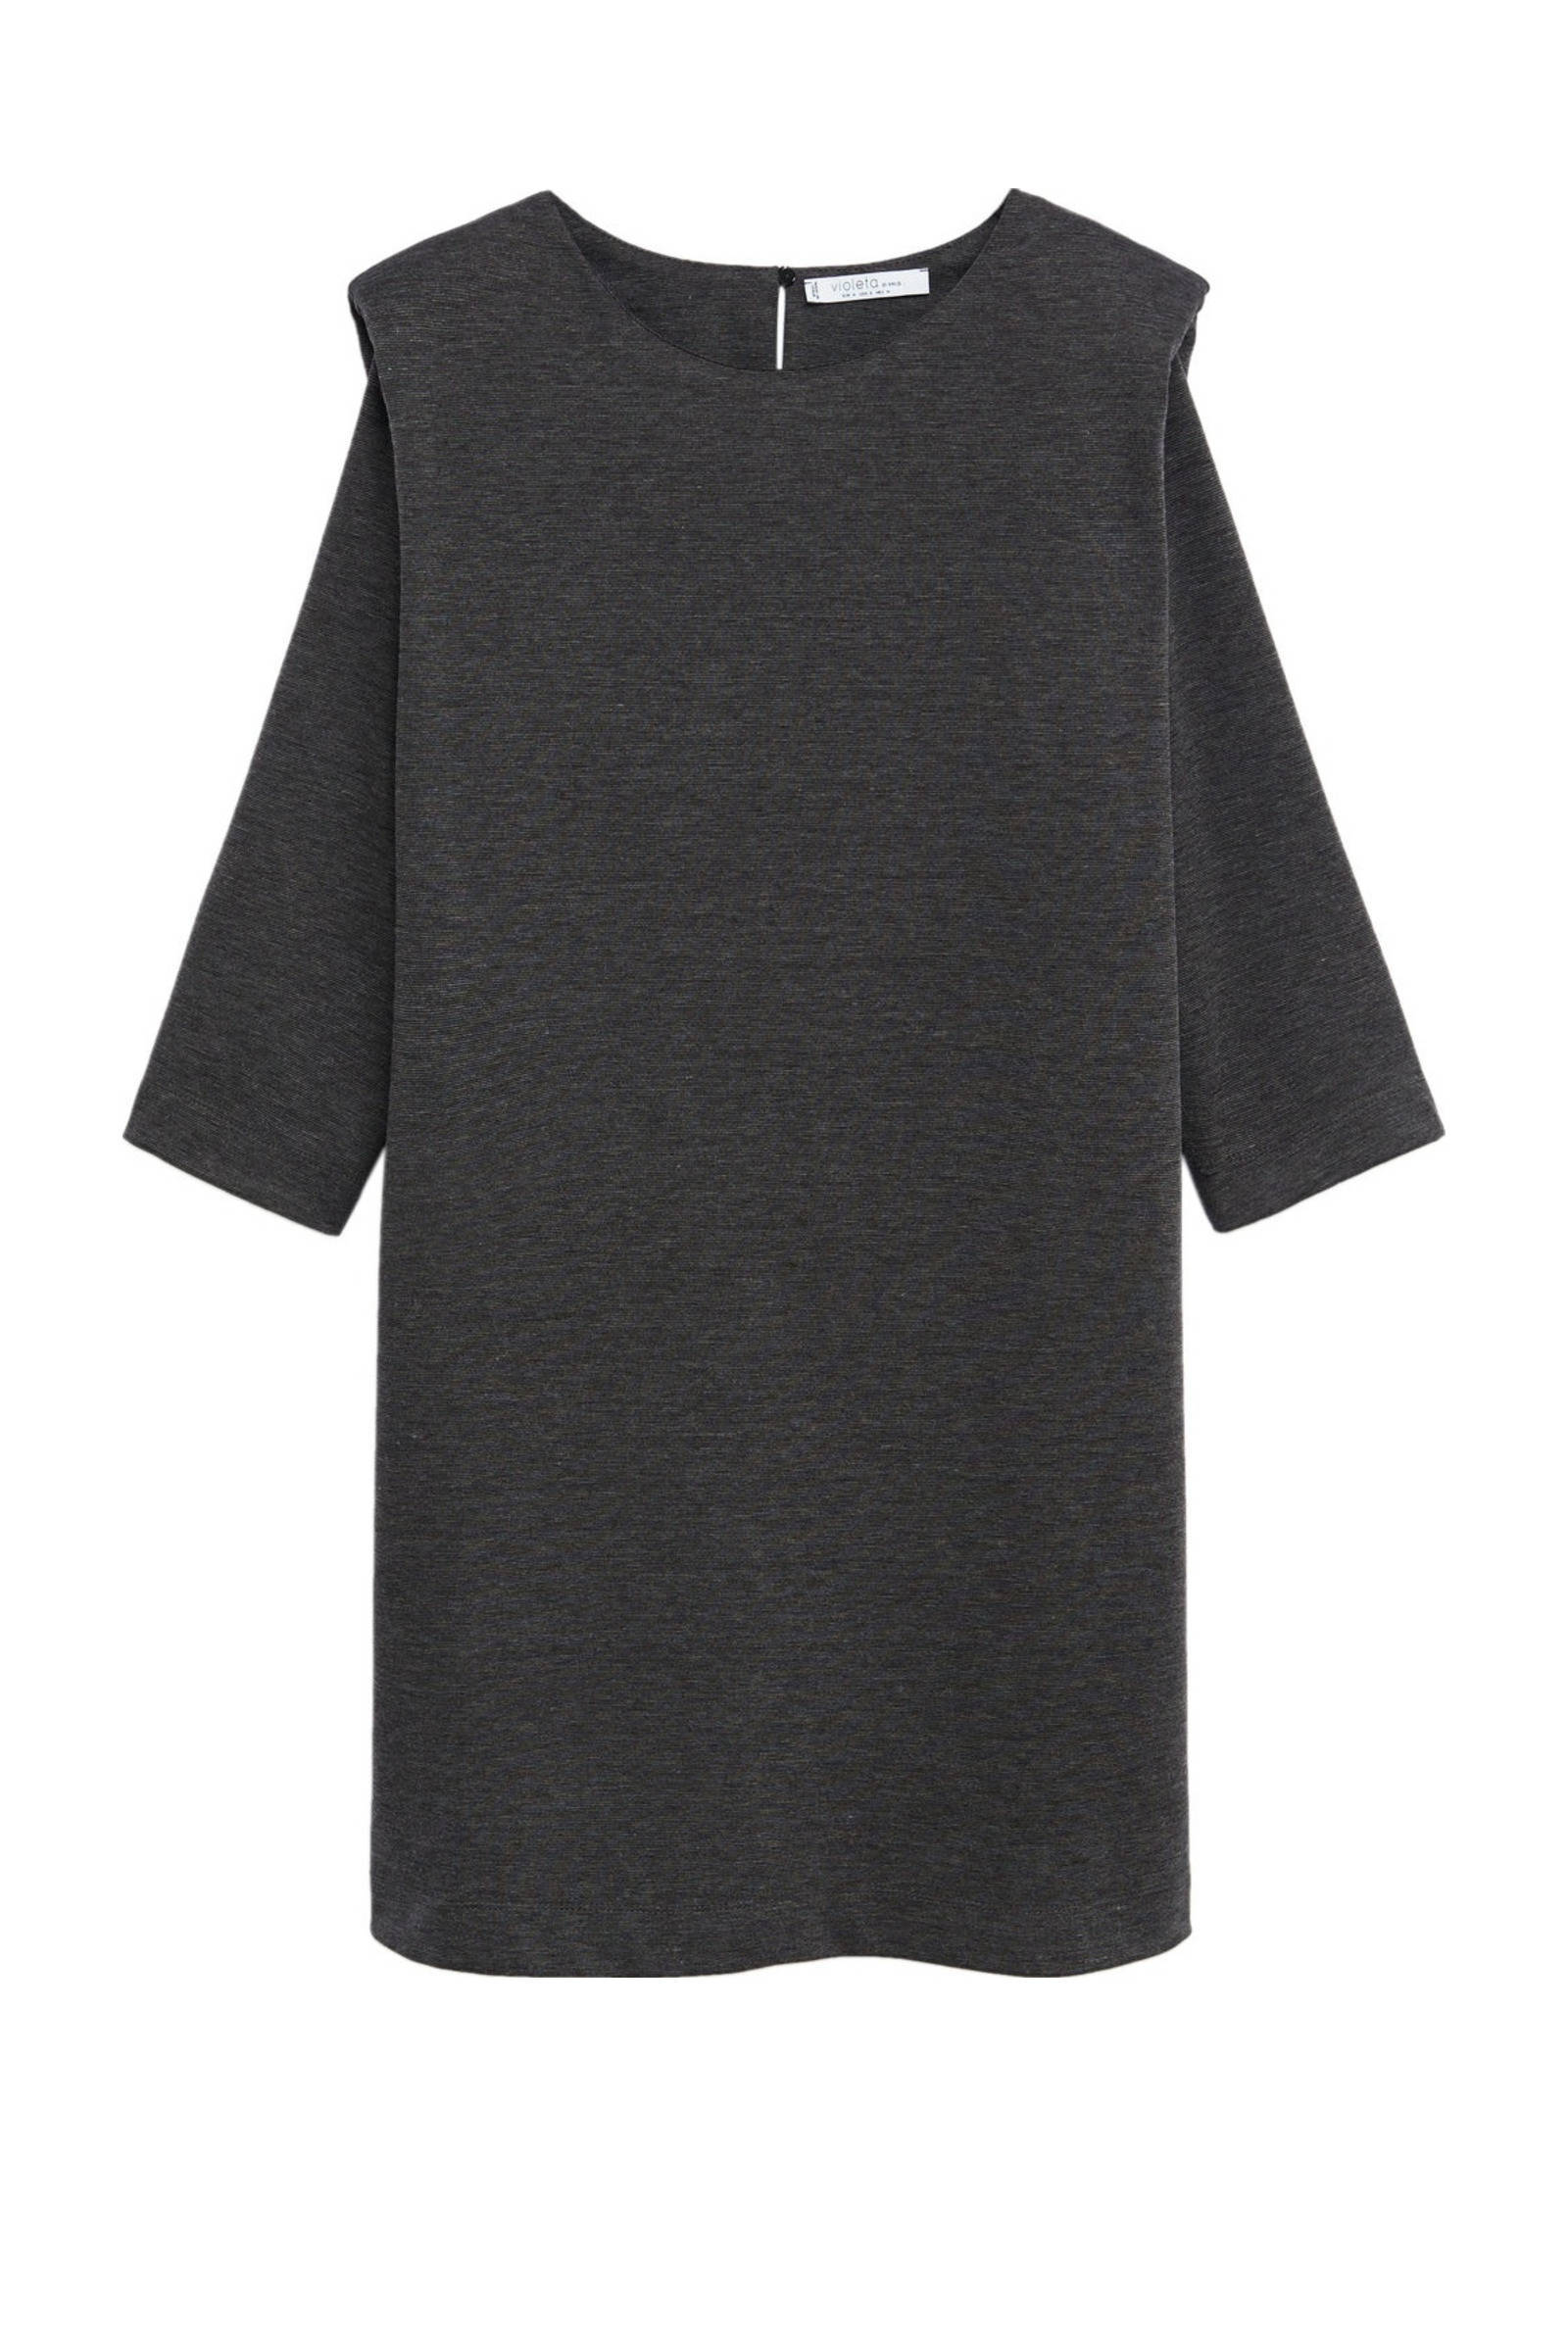 Violeta by Mango jurk grijs melange met schoudervulling online kopen